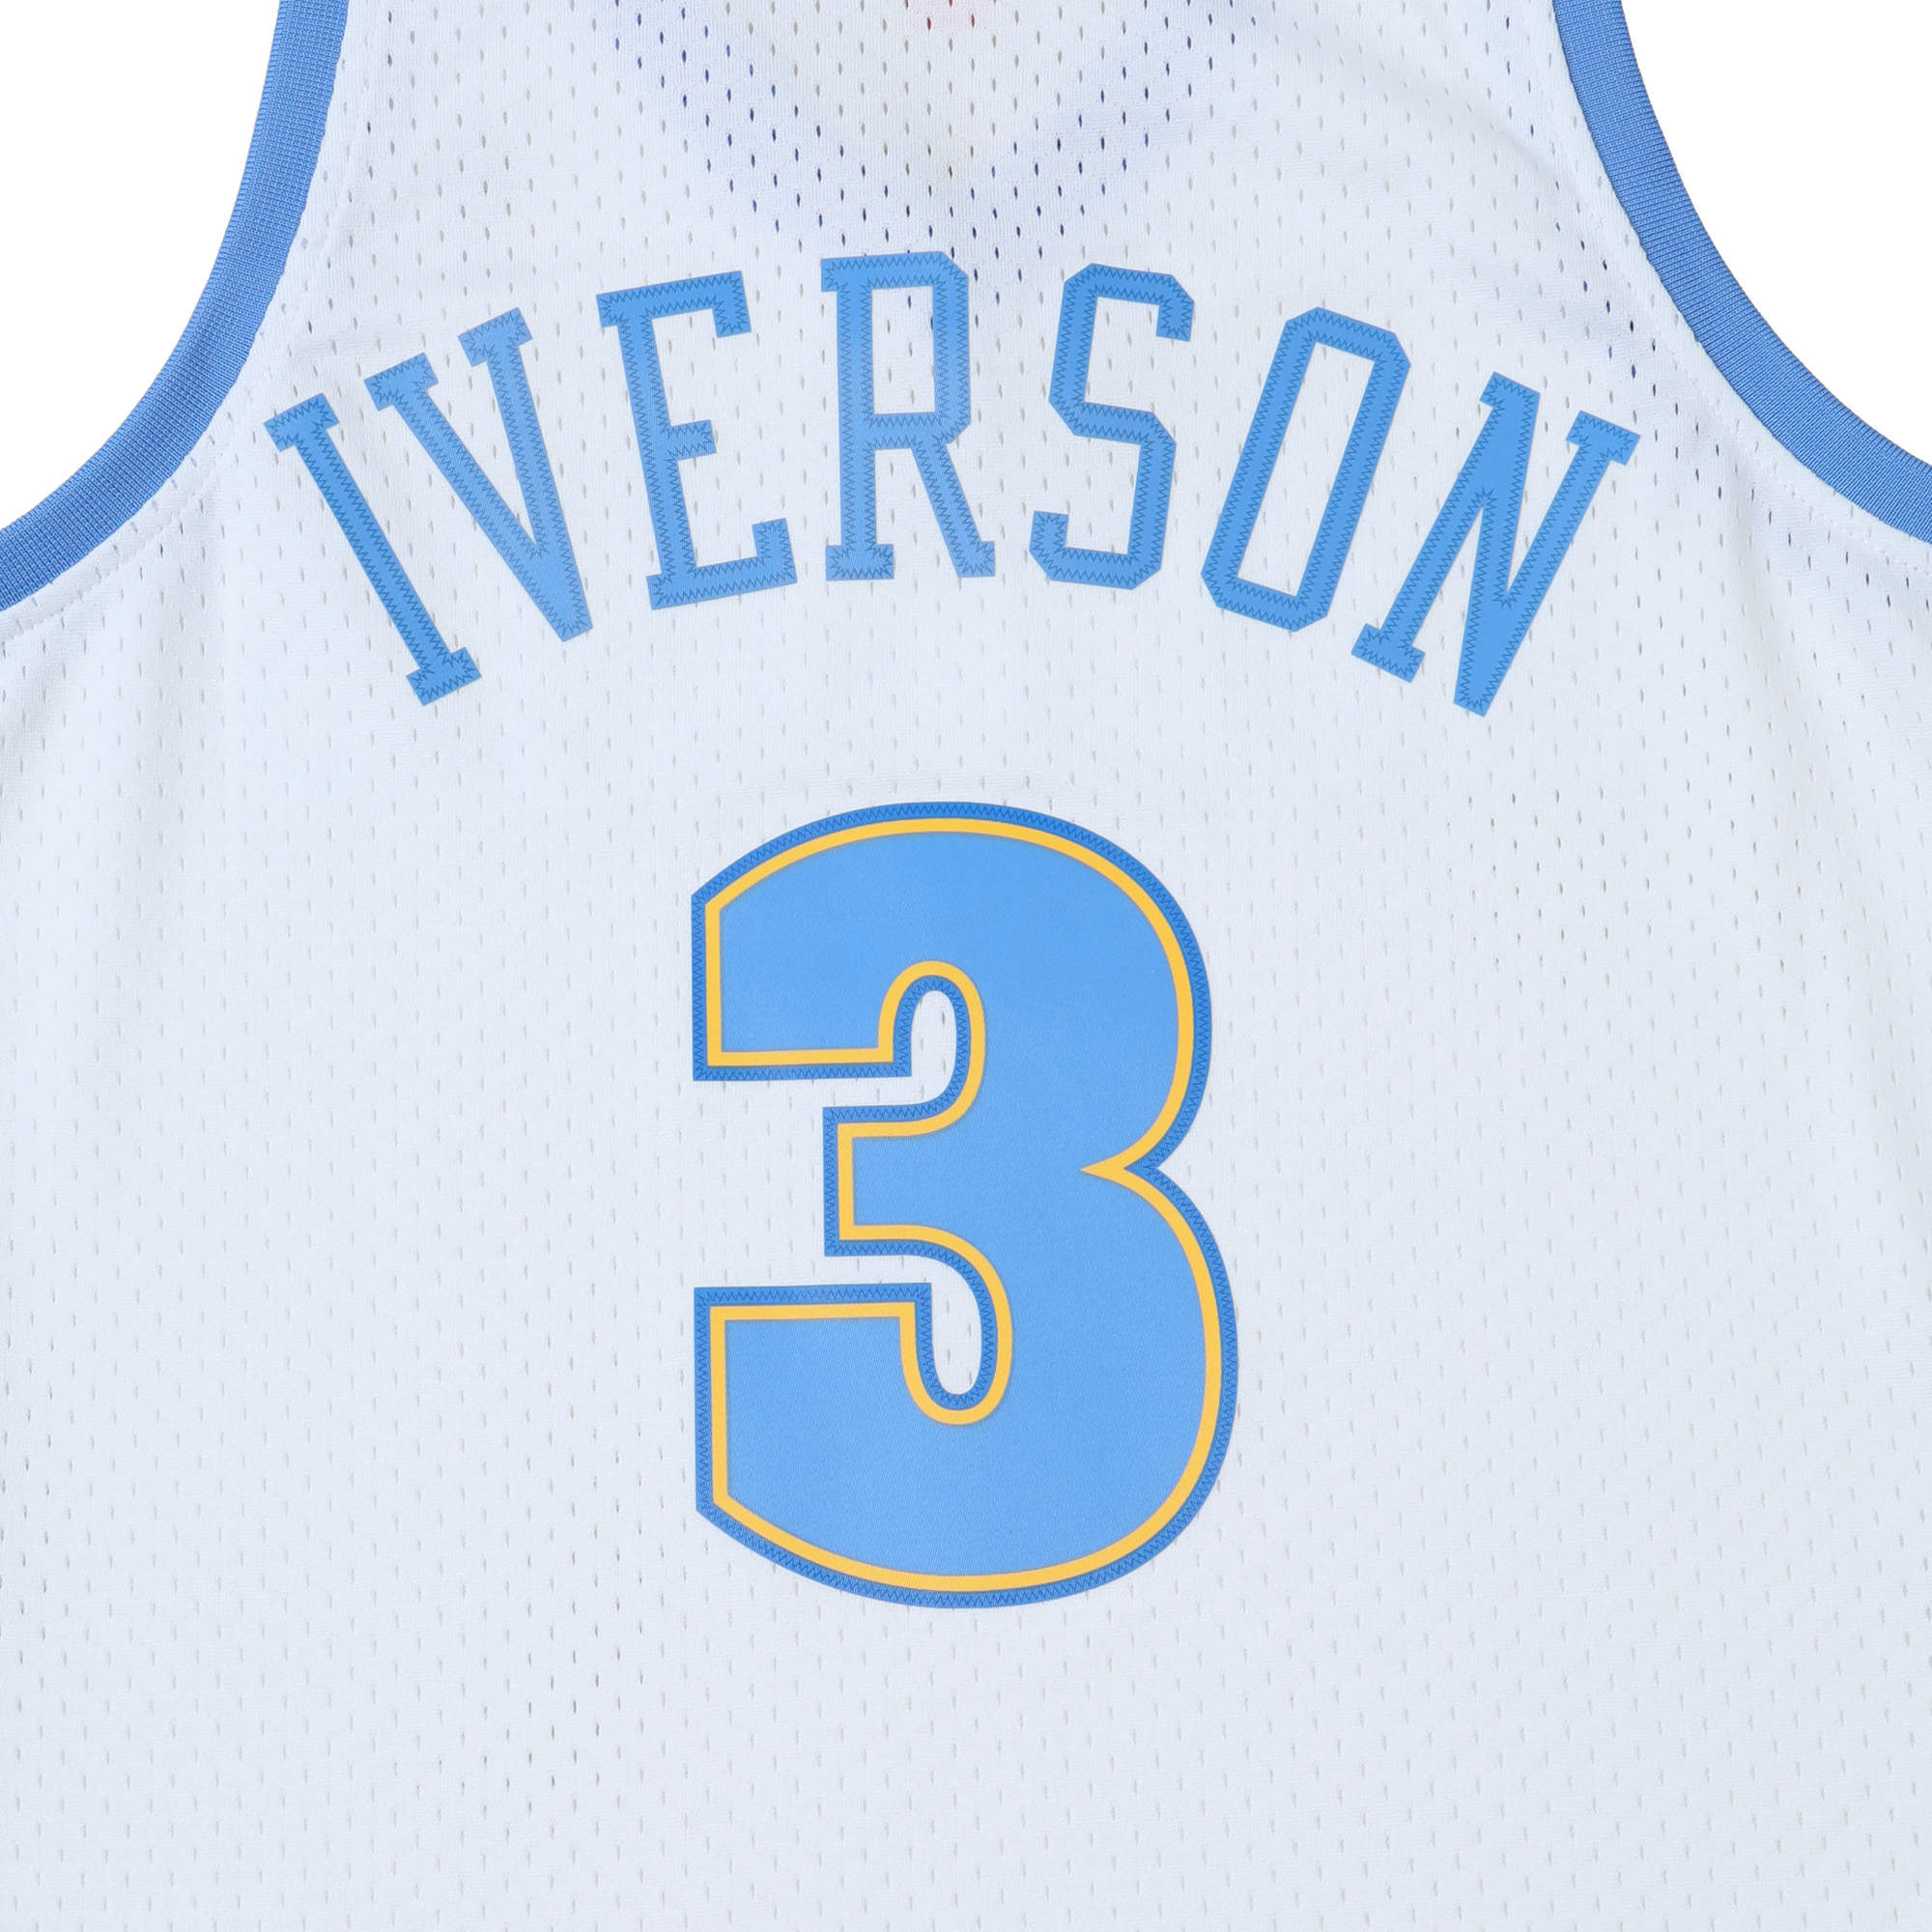 アレン・アイバーソン ナゲッツ ホーム スイングマンジャージ 2006-07 DENVER NUGGETS NBA SWINGMAN JERSEY  NUGGETS 06 ALLEN IVERSON